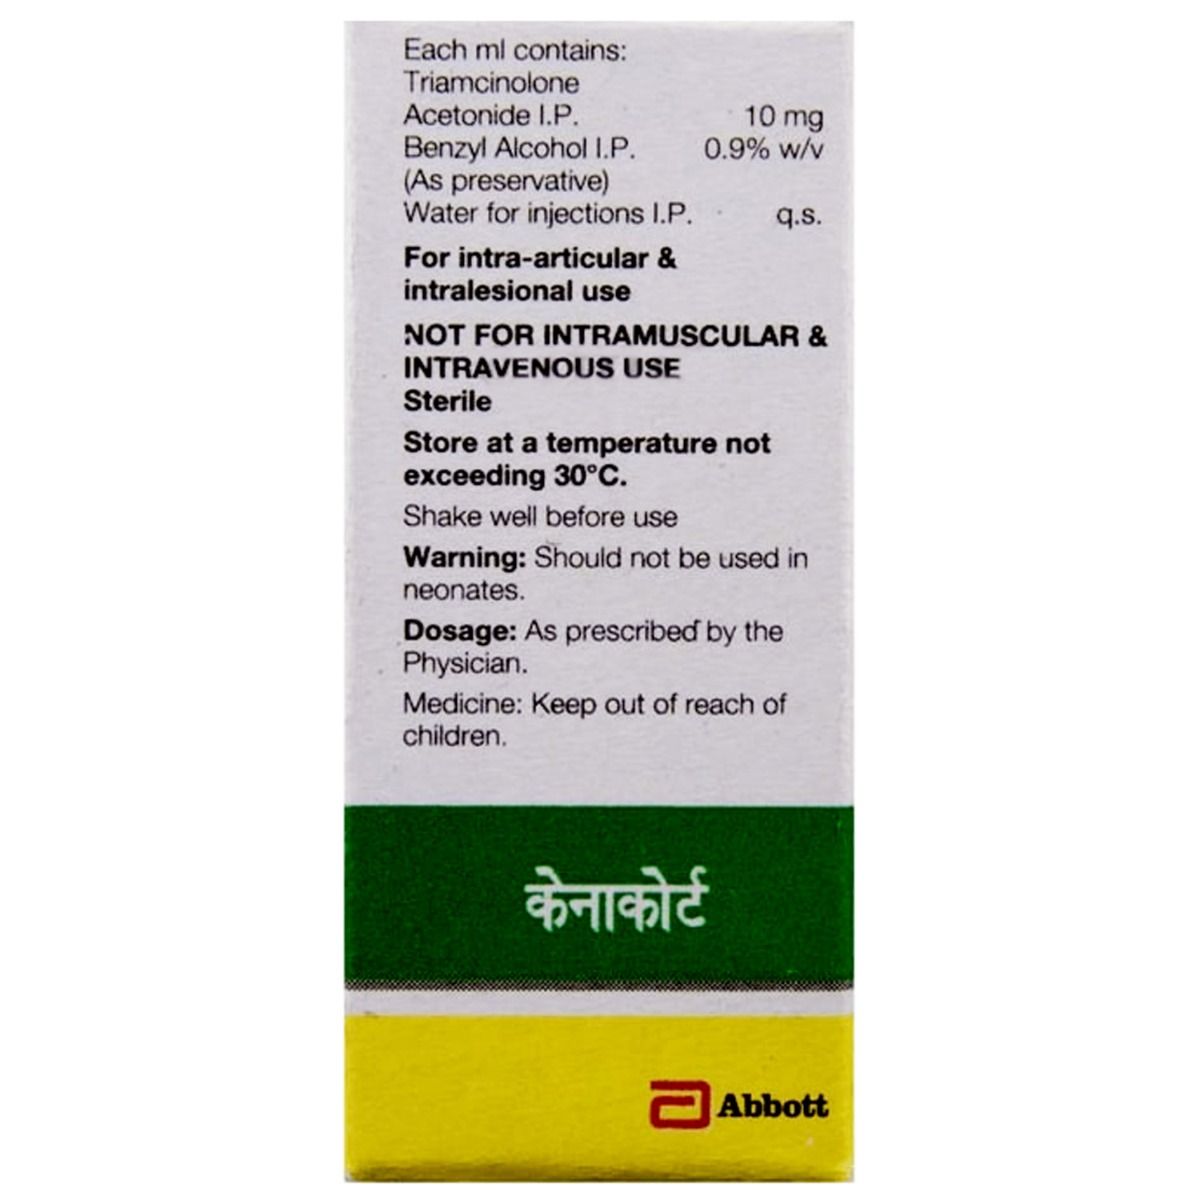 Kenacort - A 40 mg Vial 1 ml